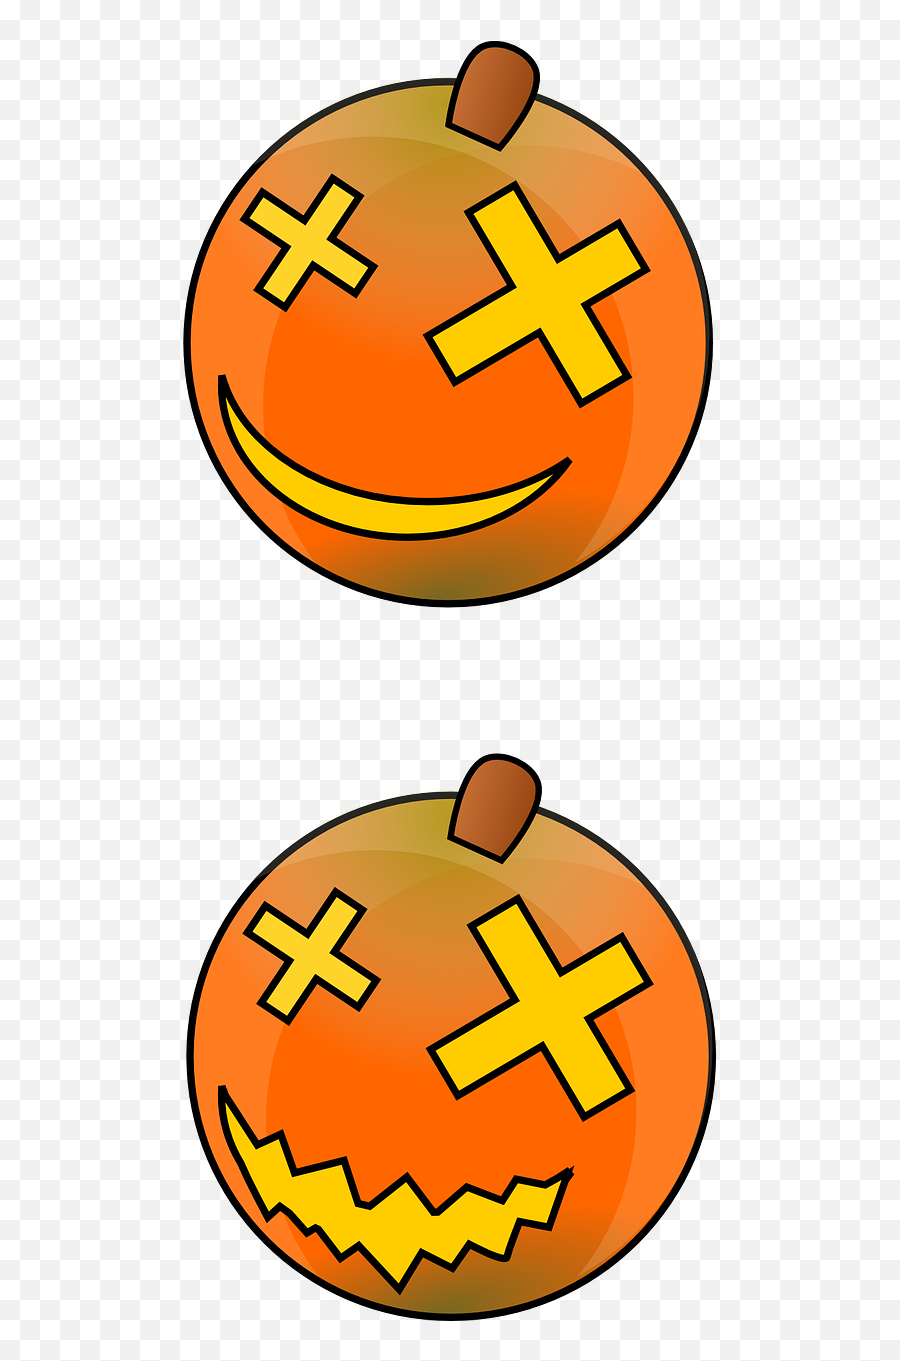 Free Clip Art Emoji,Clipart Of Pumpkins